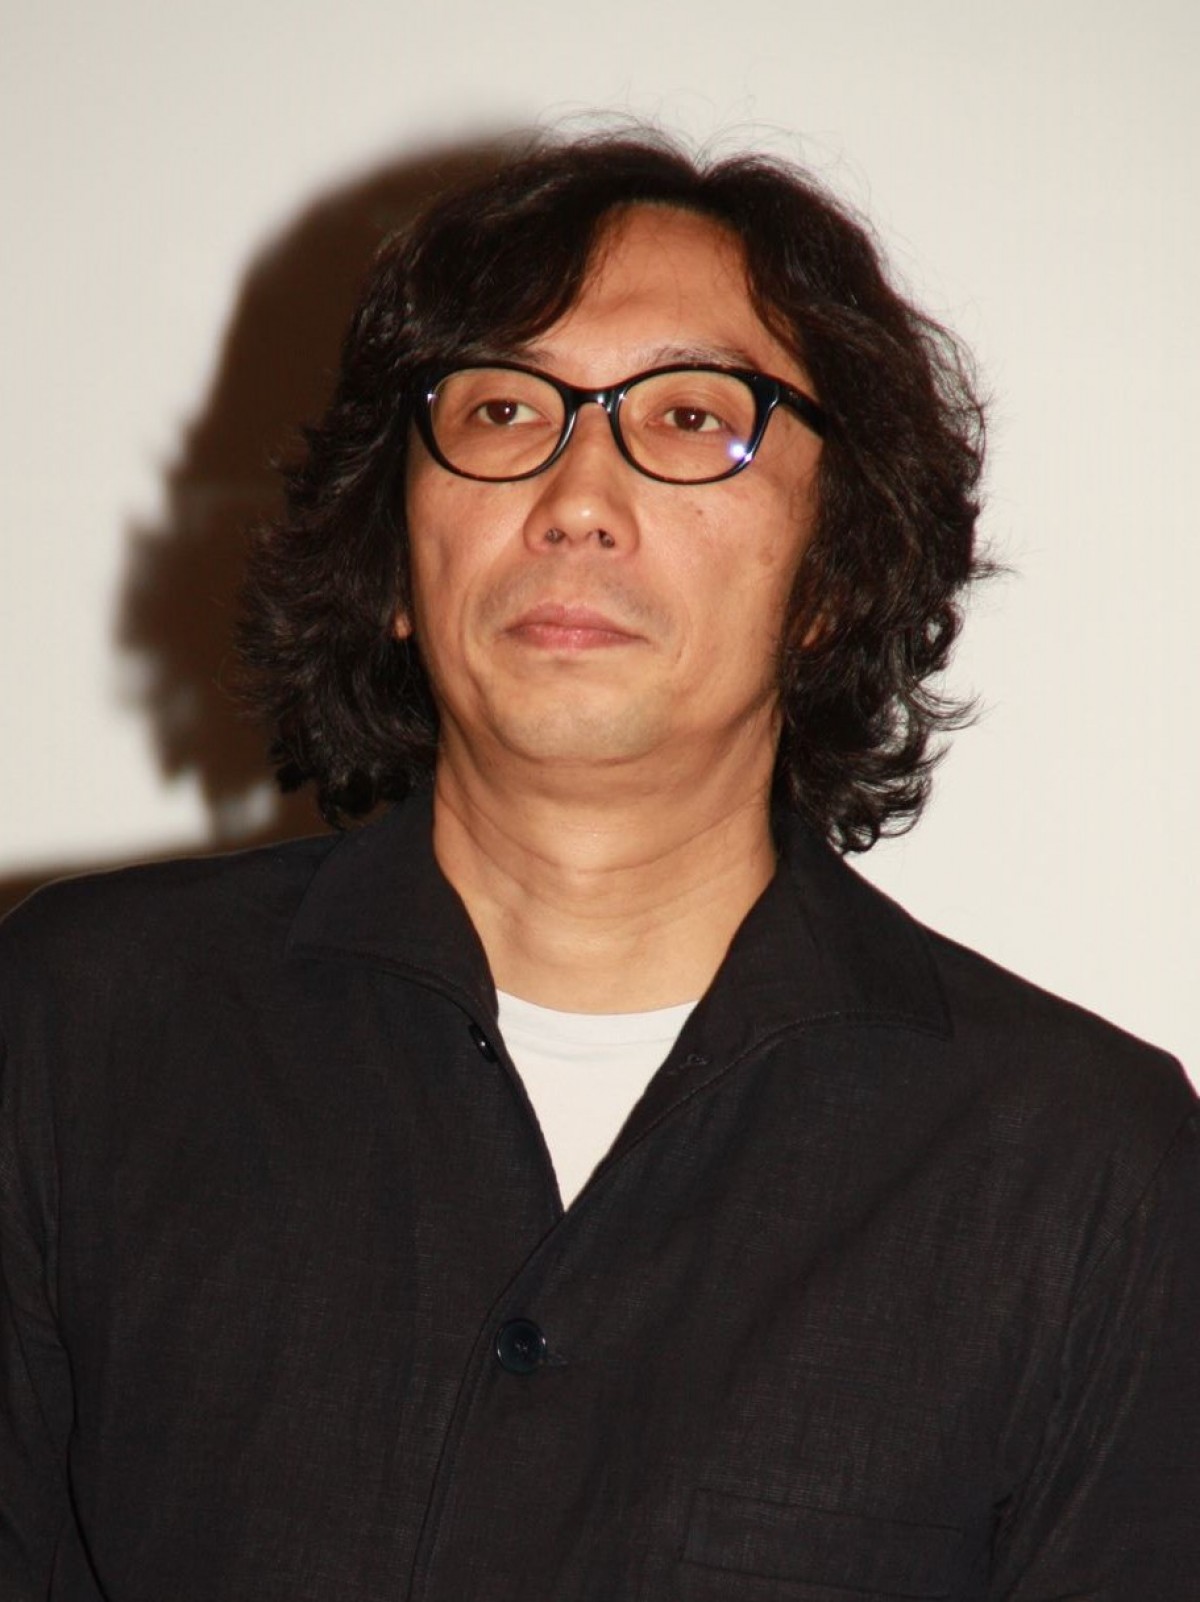 行定勲監督、アジア映画監督とオムニバス作品製作へ　「東京国際映画祭」新企画を発表